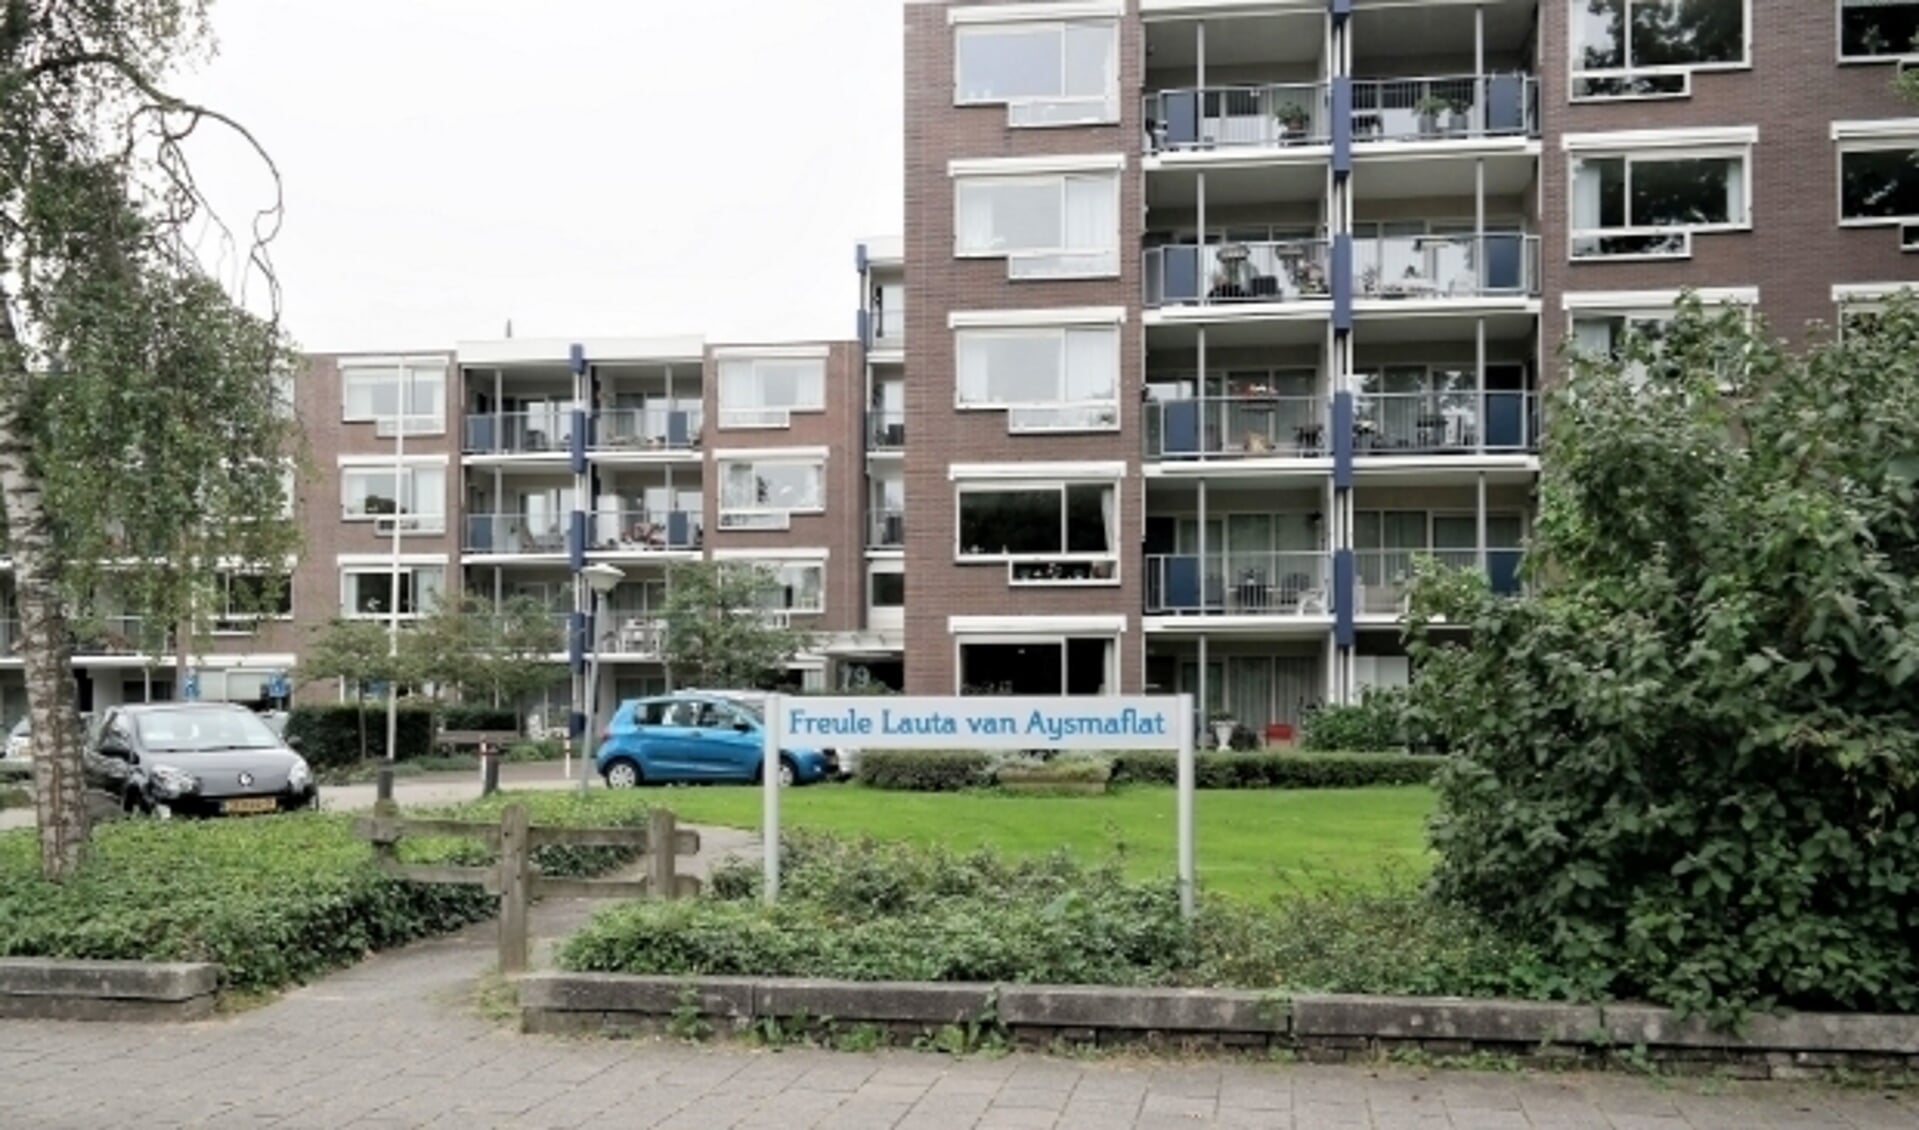 De Freule Lauta van Aysma-flat aan de Kerkewijk.